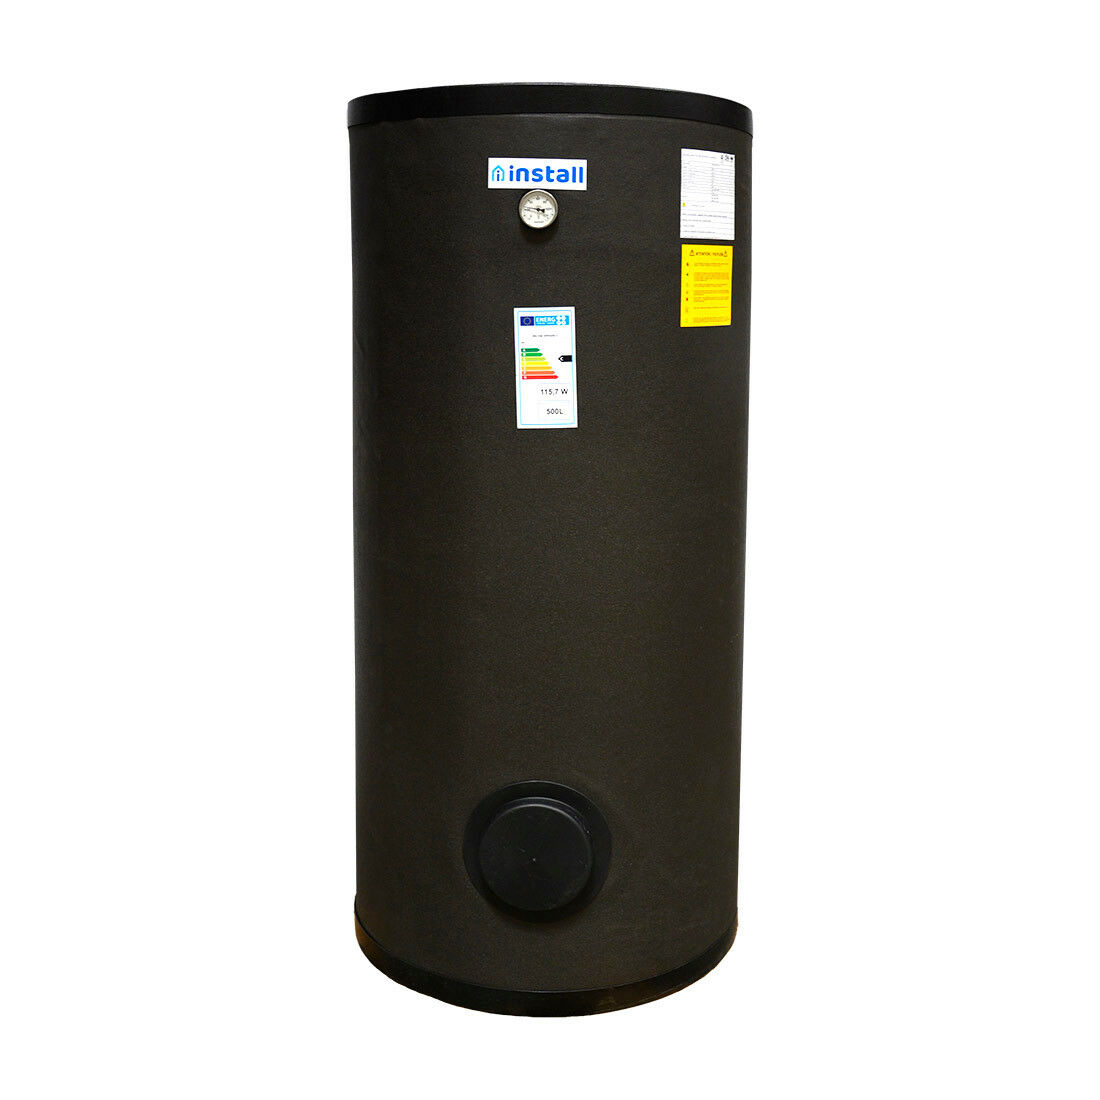 Install Watex indirekt tároló, 500 liter, hőszivattyúhoz, PU szigeteléssel, (hőcserélő 5,27 m2) ( INS-SW-HP0500-1 )